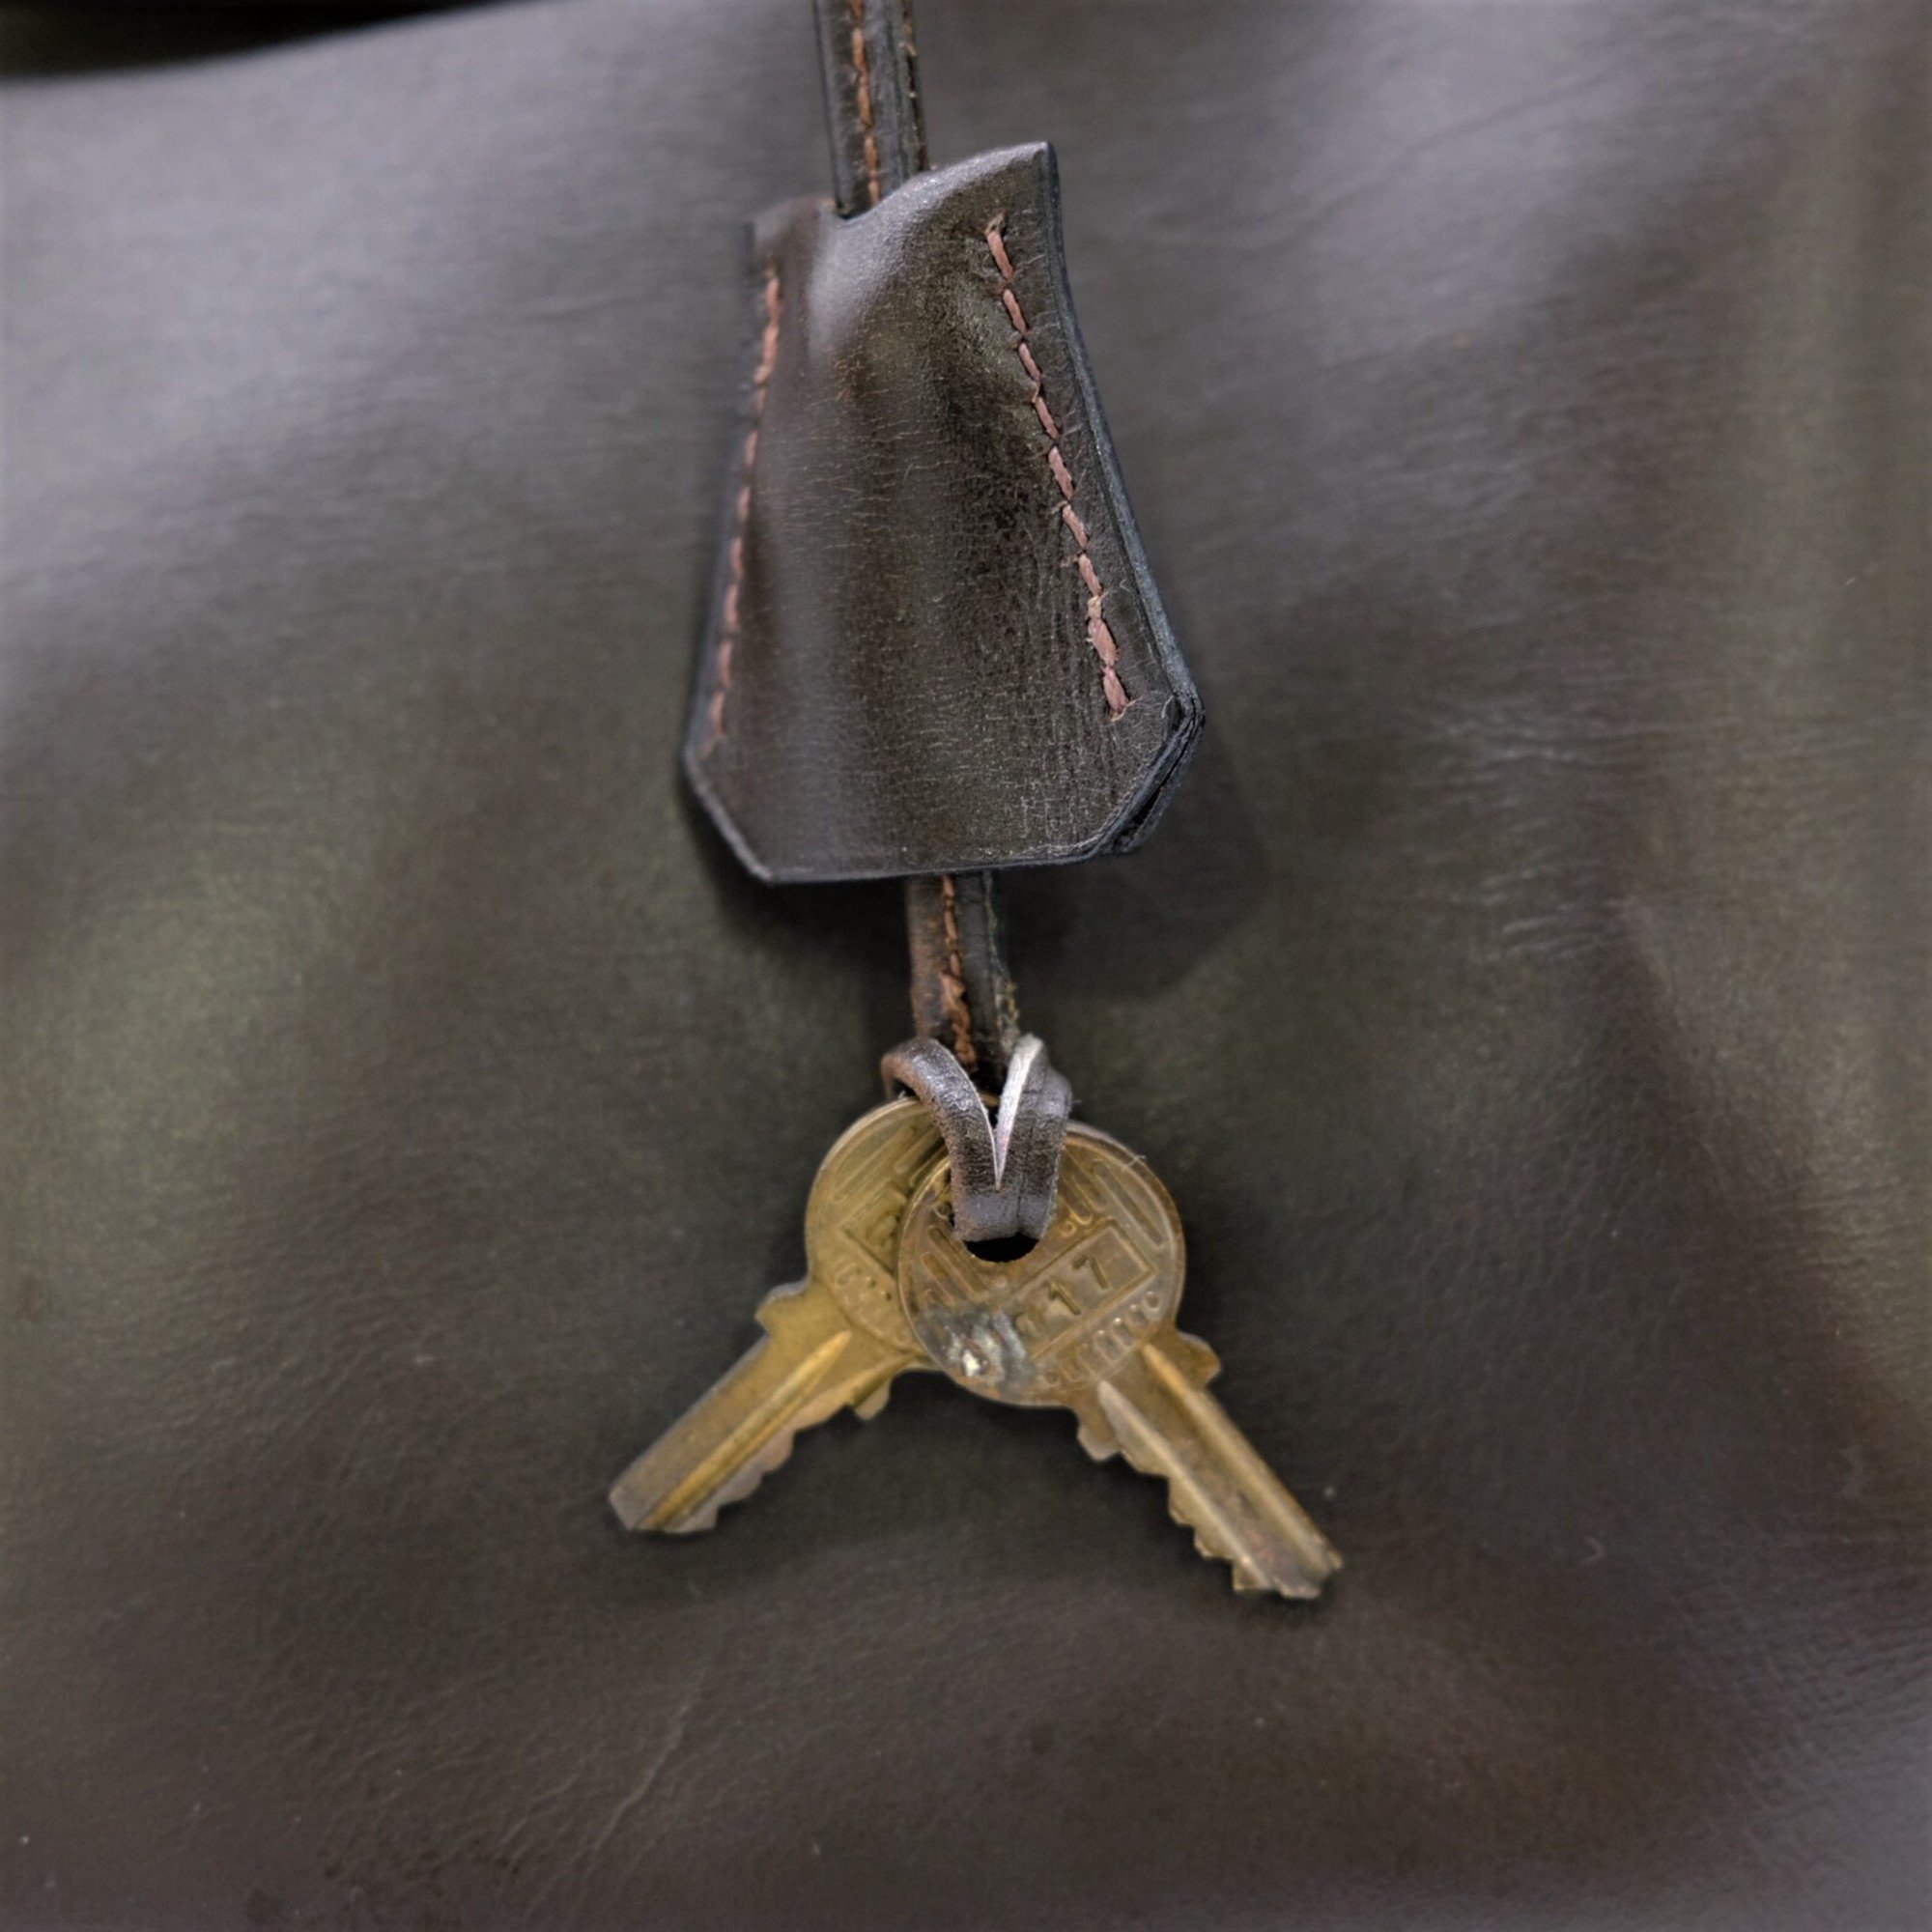 HERMES Kelly 32 handbag in box calf leather, dark brown